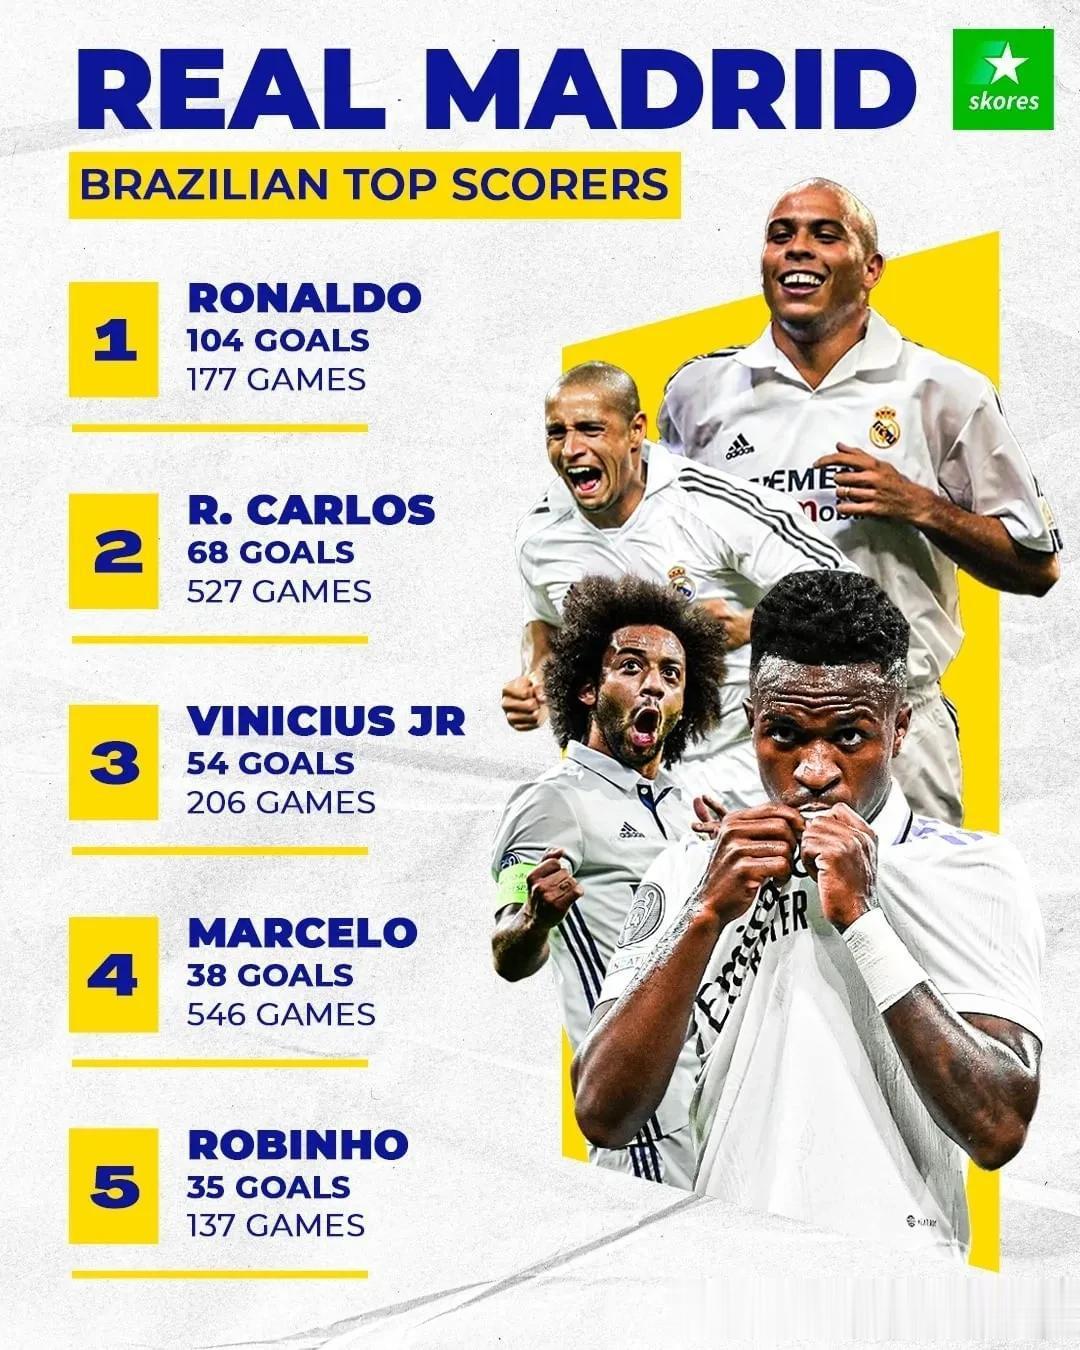 为皇马进球最多的巴西球员：
1、罗纳尔多，177场比赛104粒进球
2、卡洛斯，